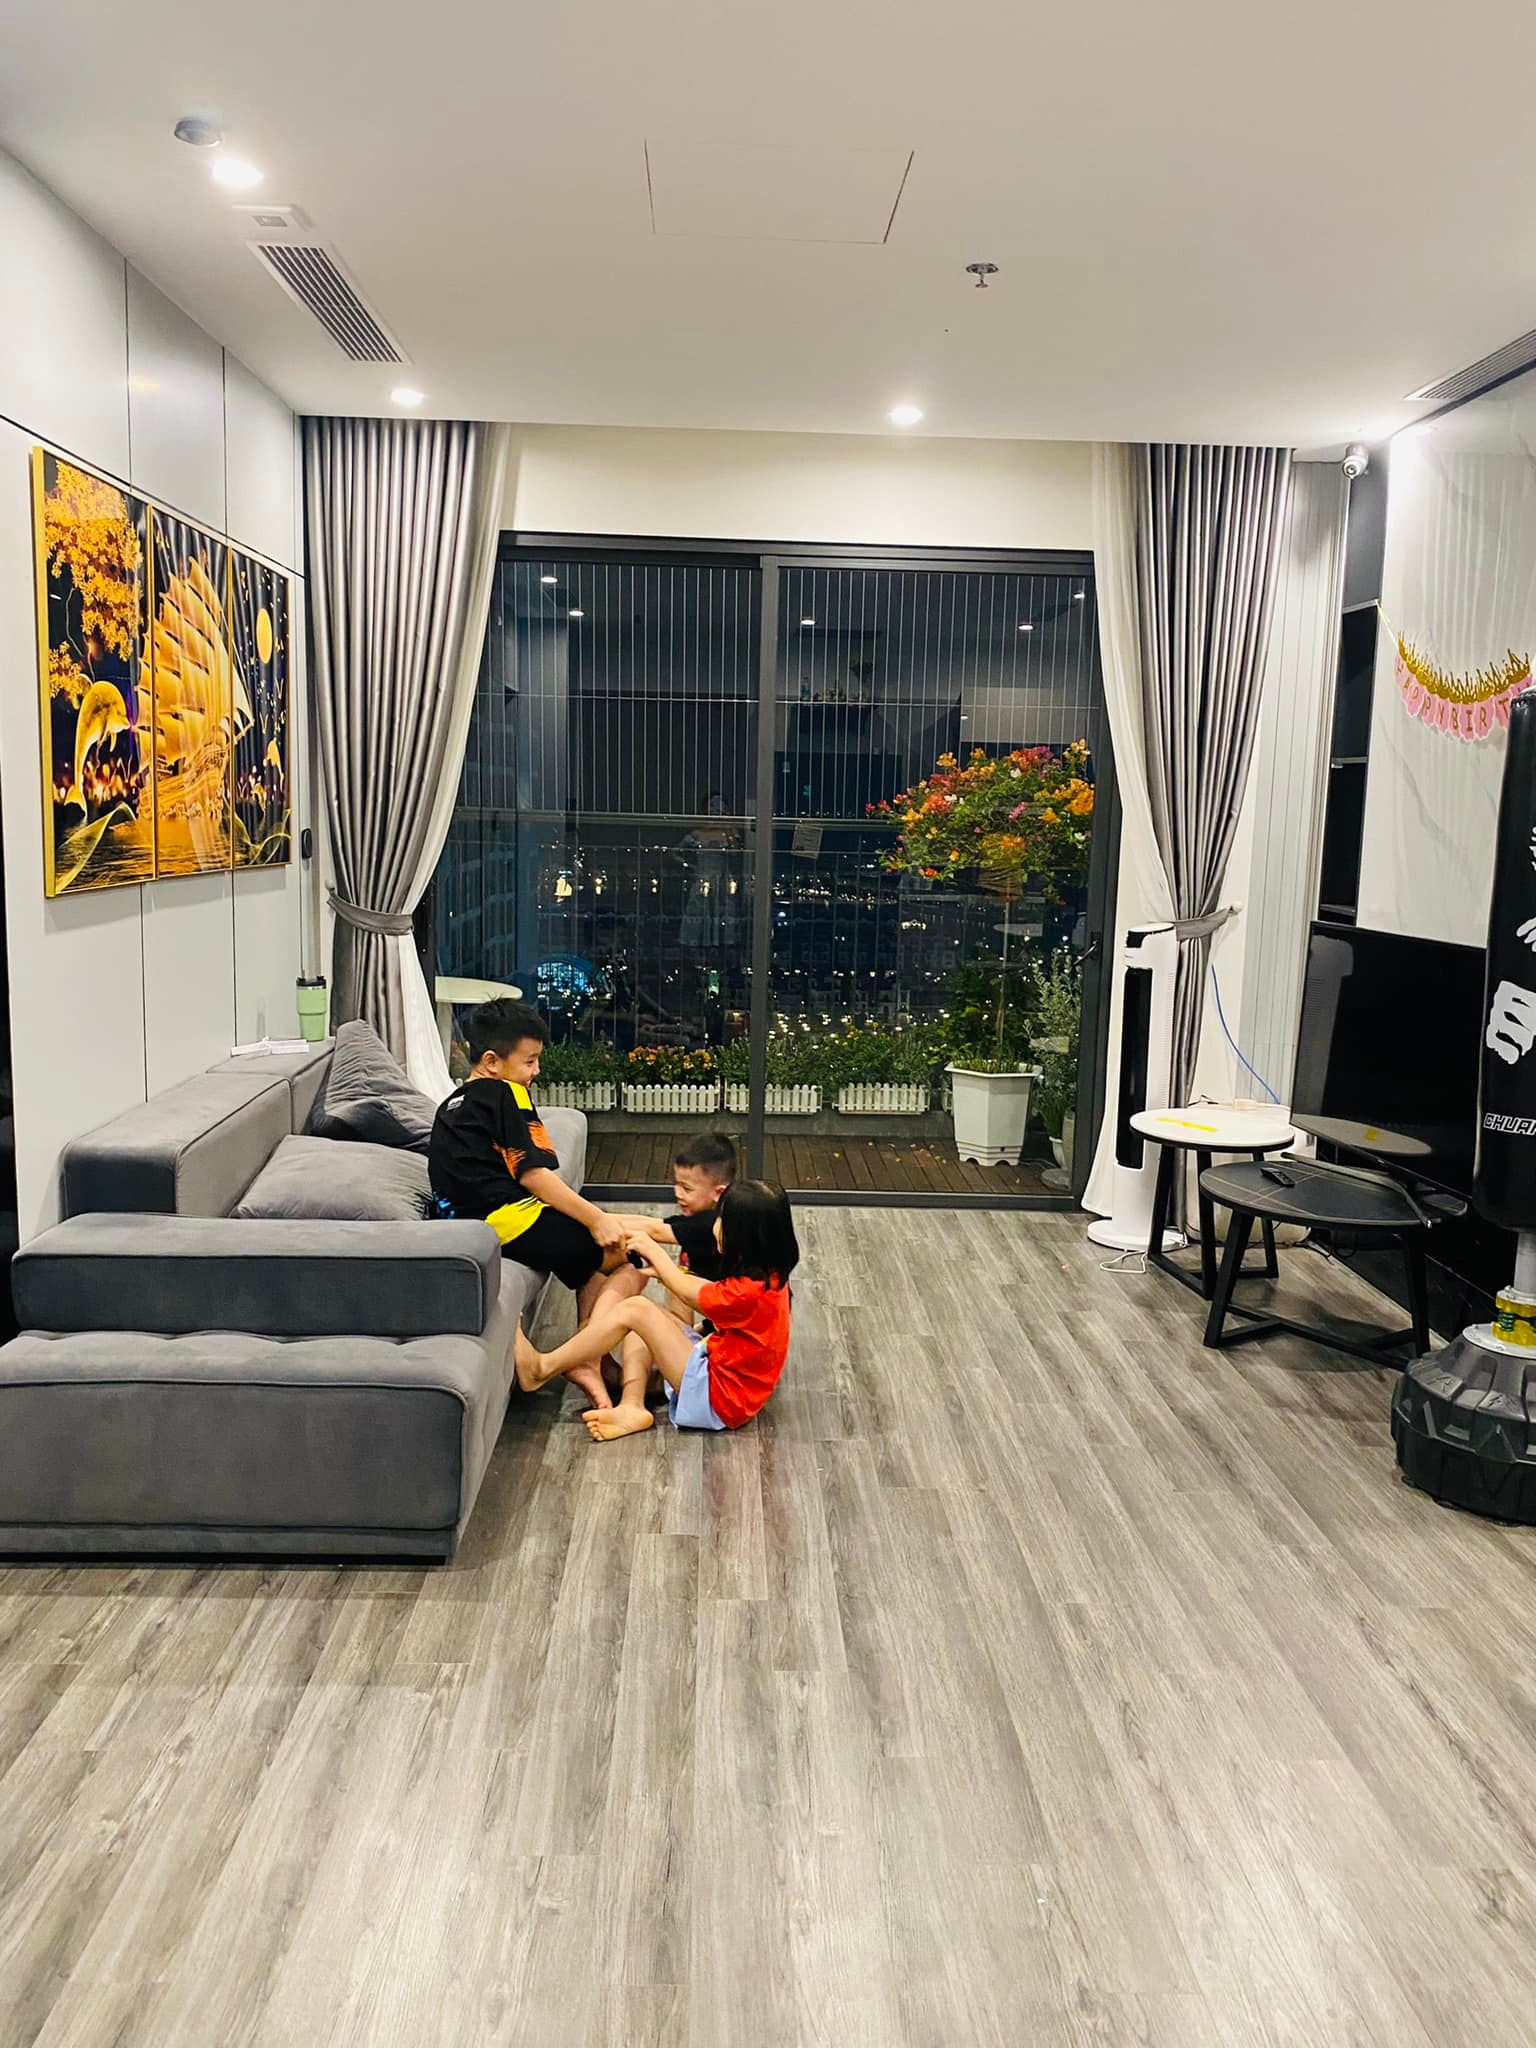 Sau 6 năm sống trong nhà thuê cũ kỹ, đôi vợ chồng ở Hà Nội mua được căn hộ ngoại ô - Ảnh 2.